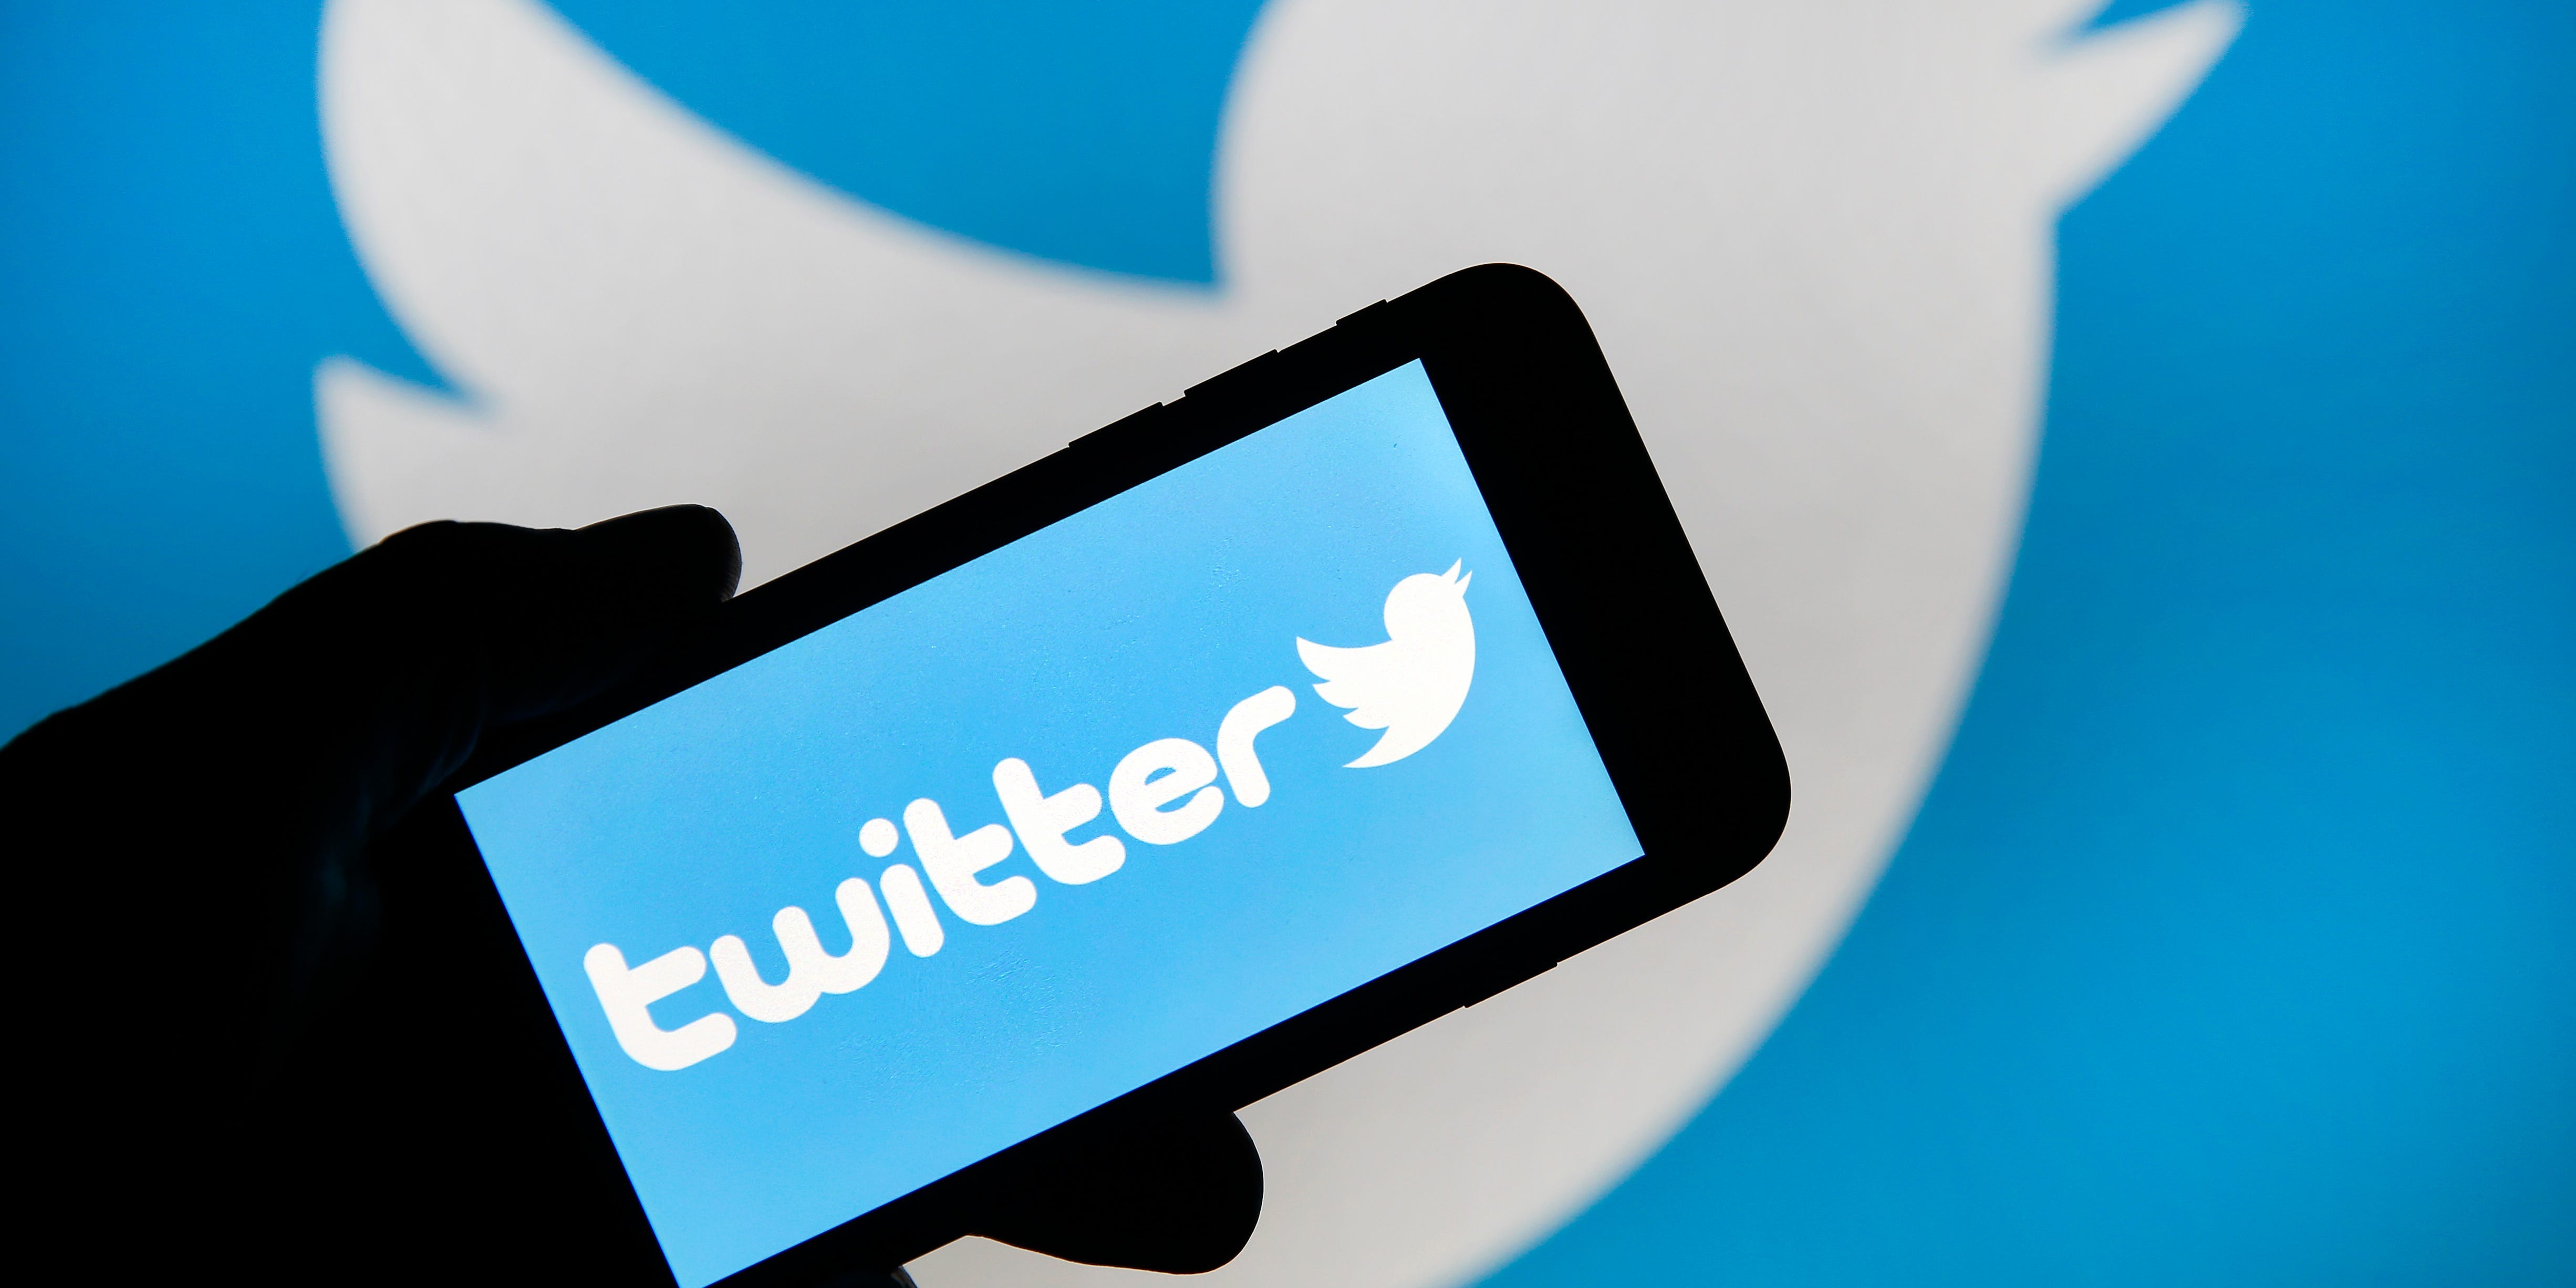 Ein Smartphone mit dem Twitter-Logo wird vor das Twitter-Vogel-Symbol gehalten.